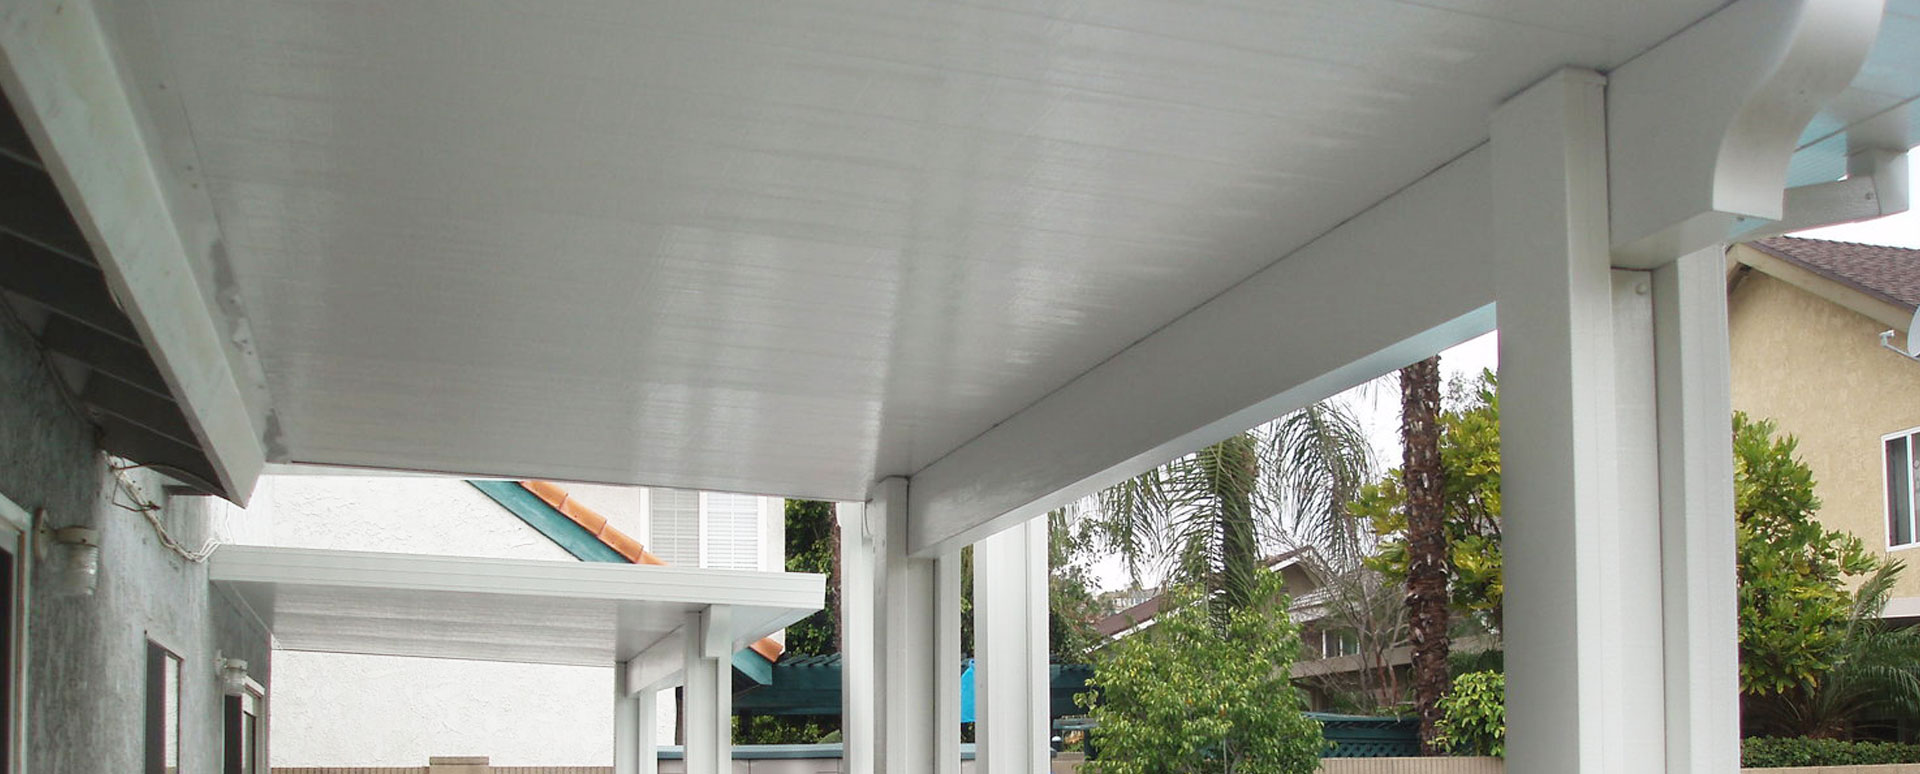 Aluminum Solid Patio Cover